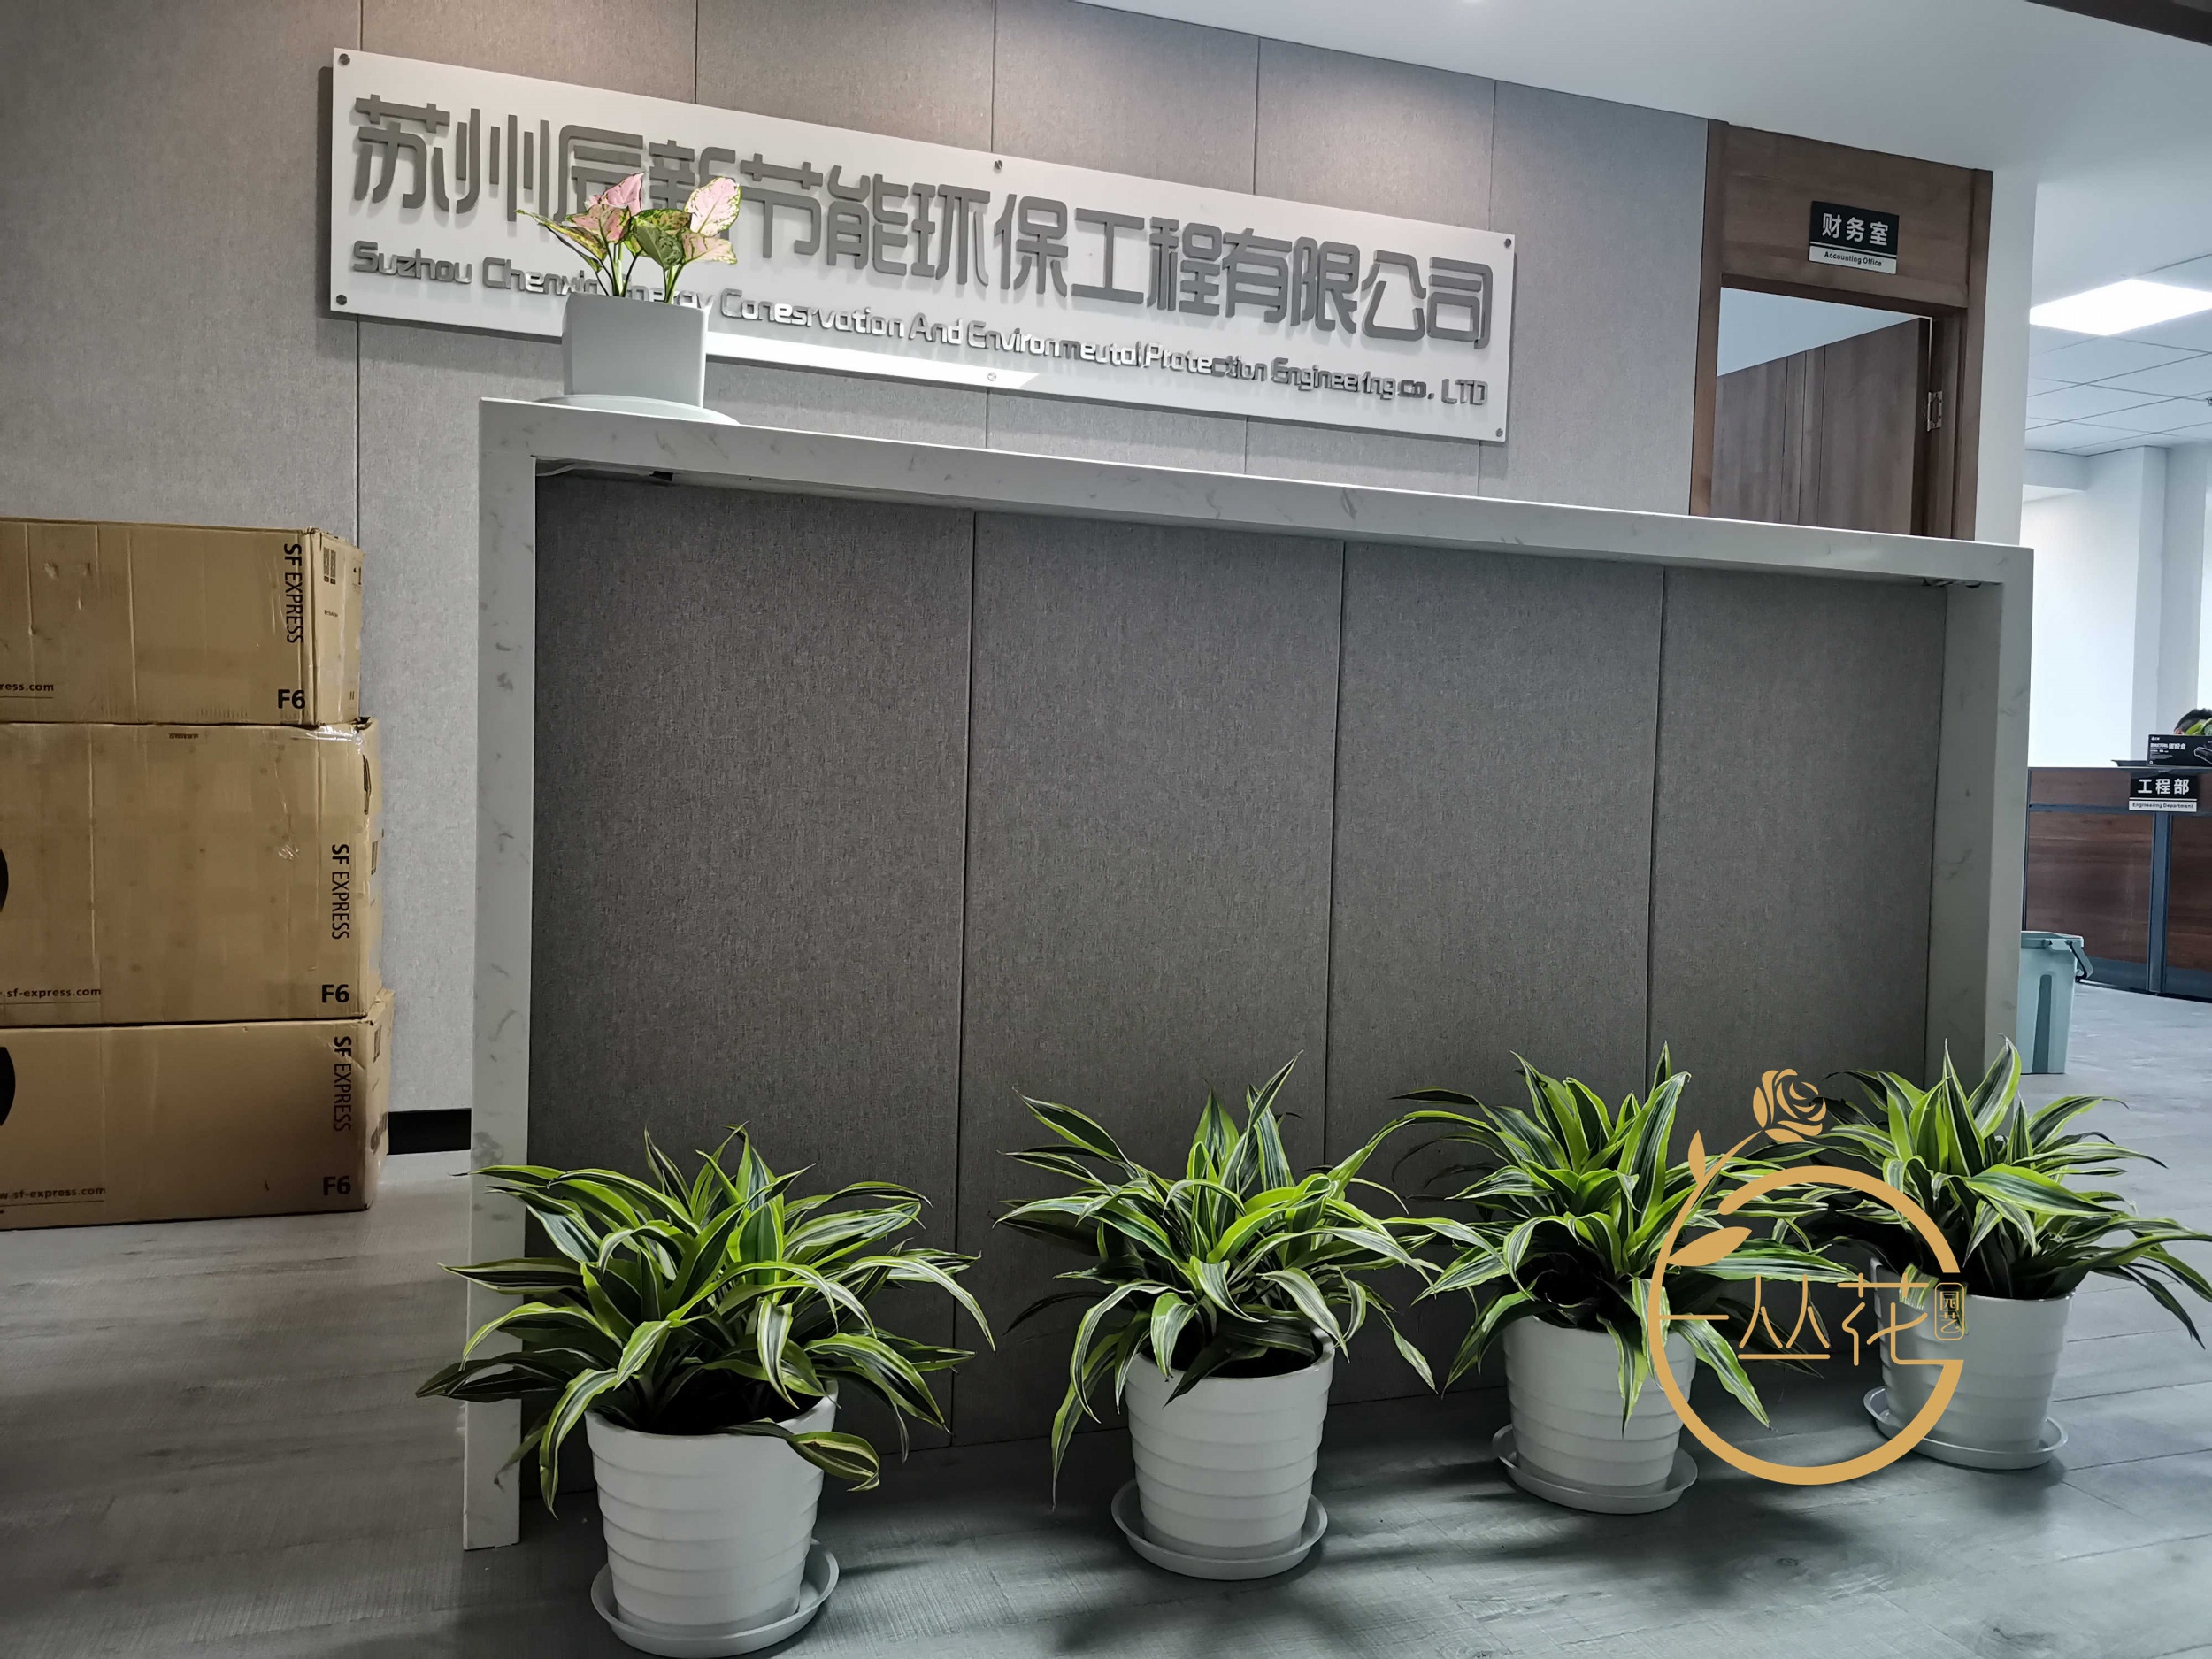 苏州高新区节能环保科技有限公司办公室植物租摆